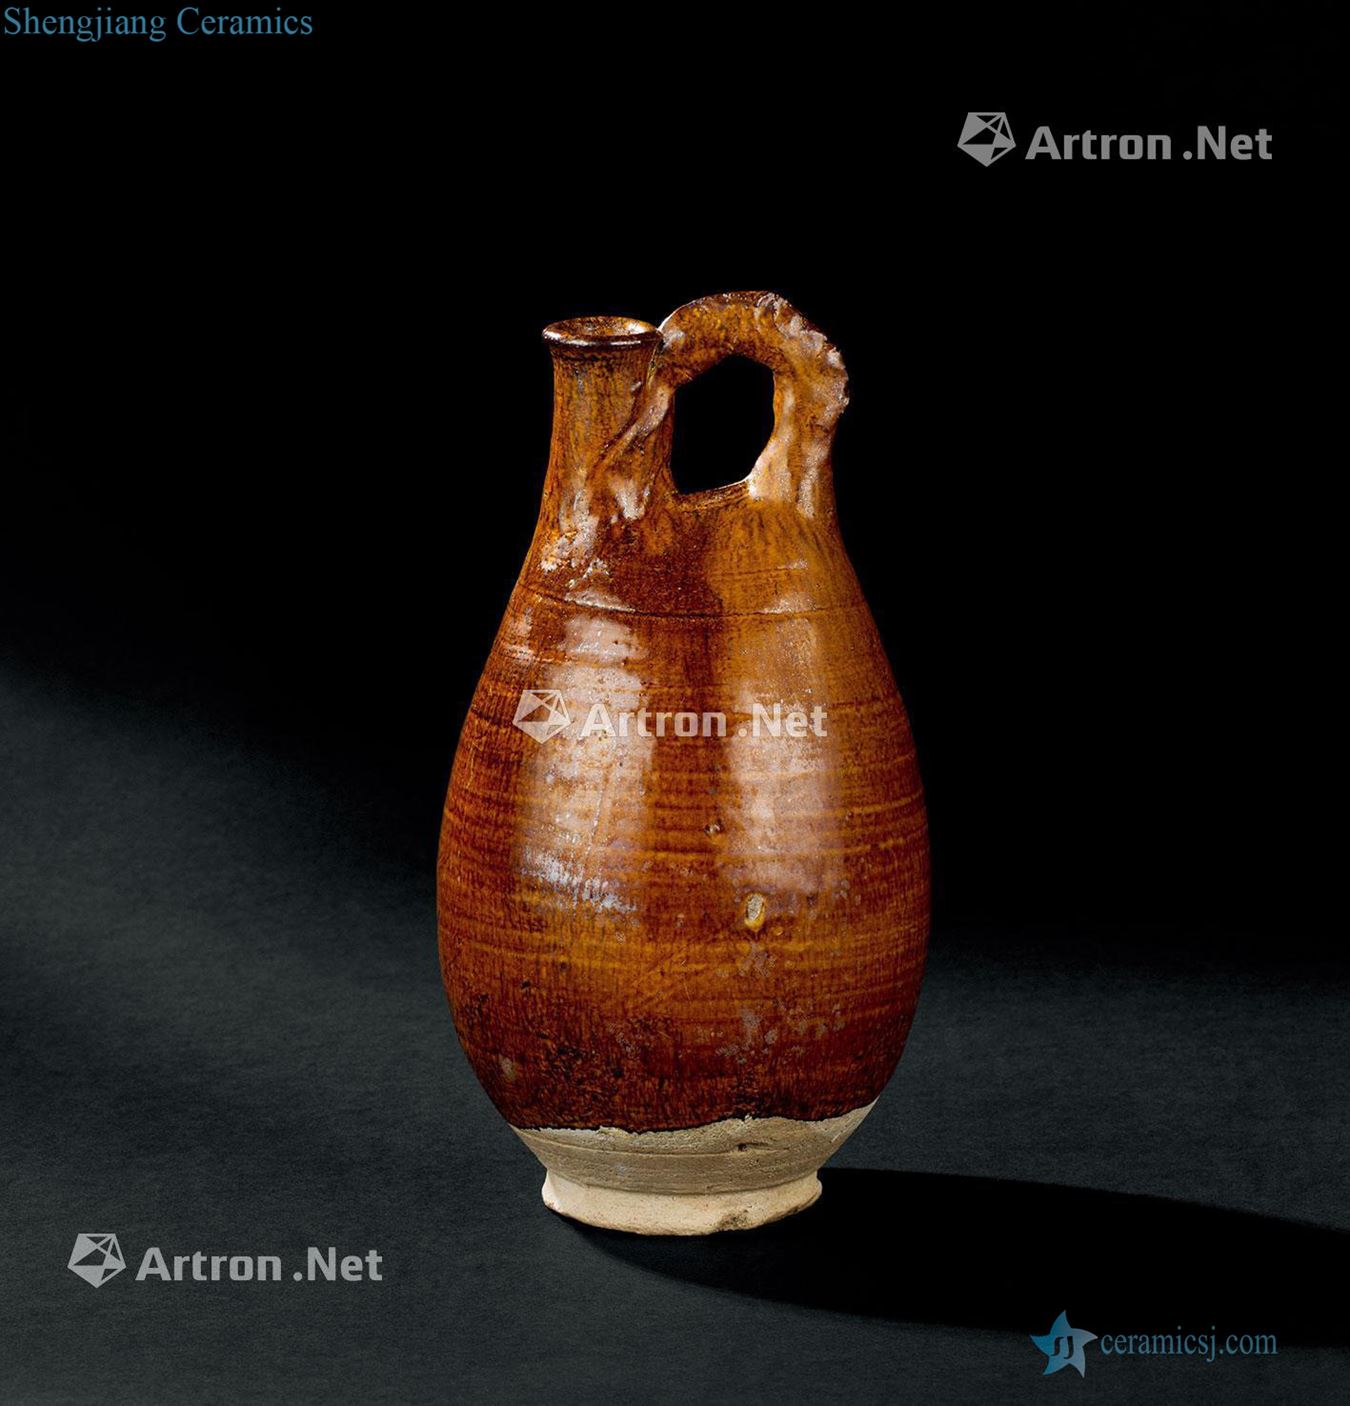 Liao dynasty (907-1125), yellow glaze comb skins